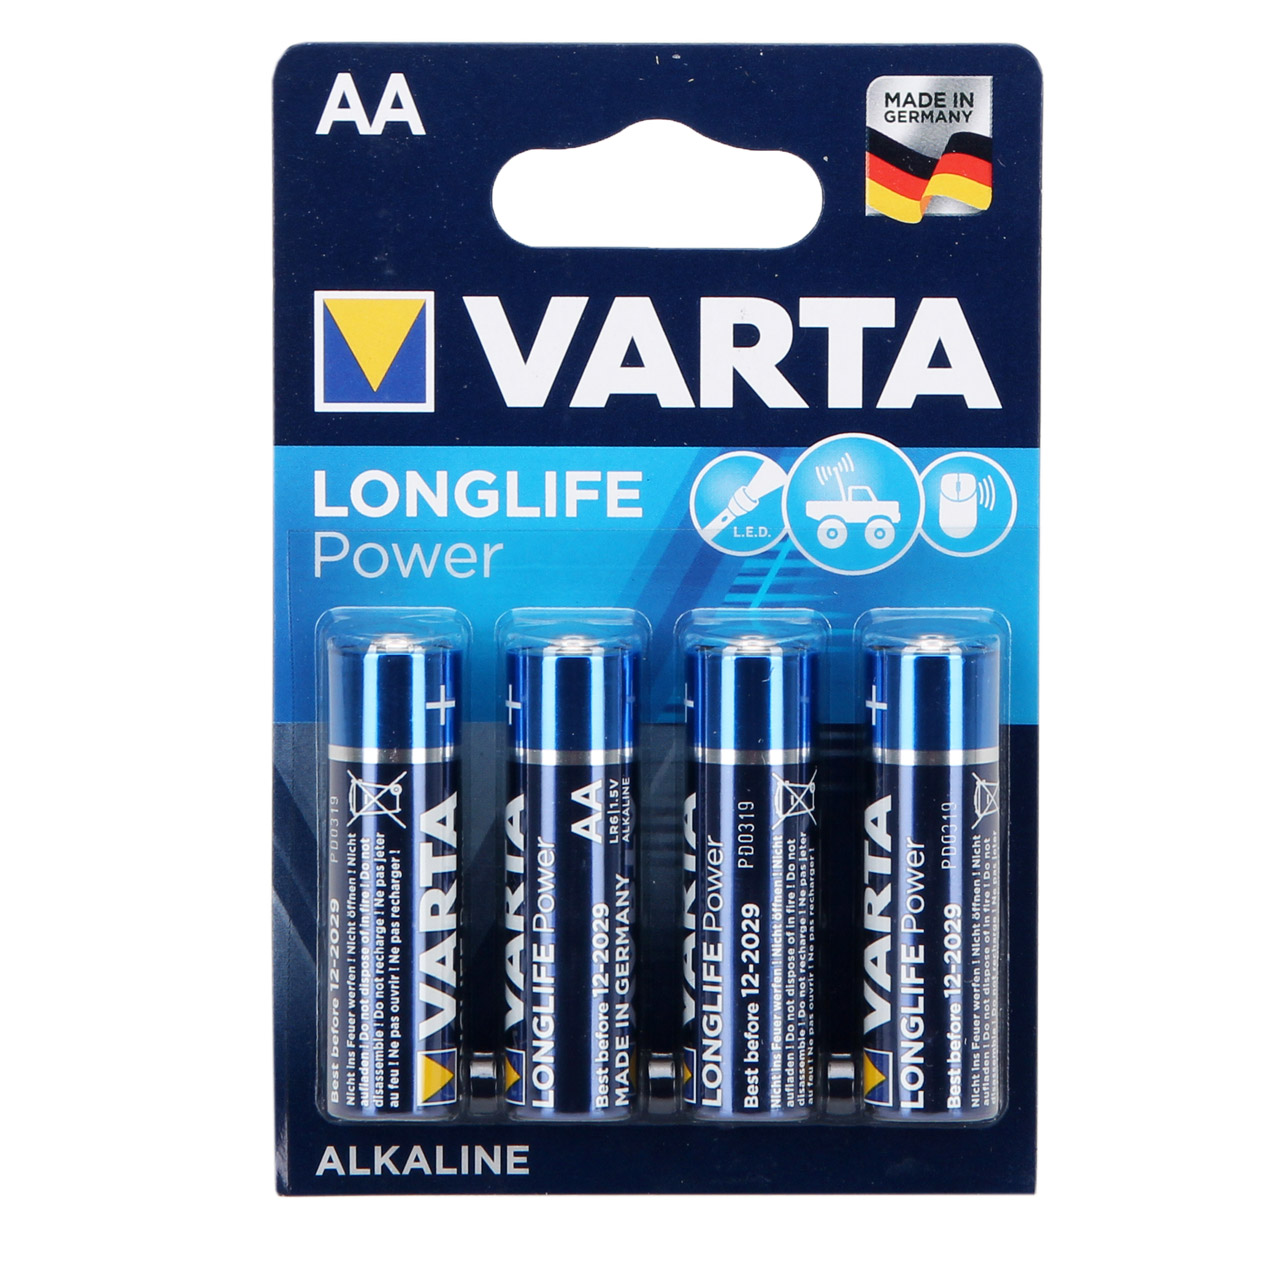 4x VARTA Batterie LONGLIFE POWER Alkaline AA LR6 Mignon 1,5V